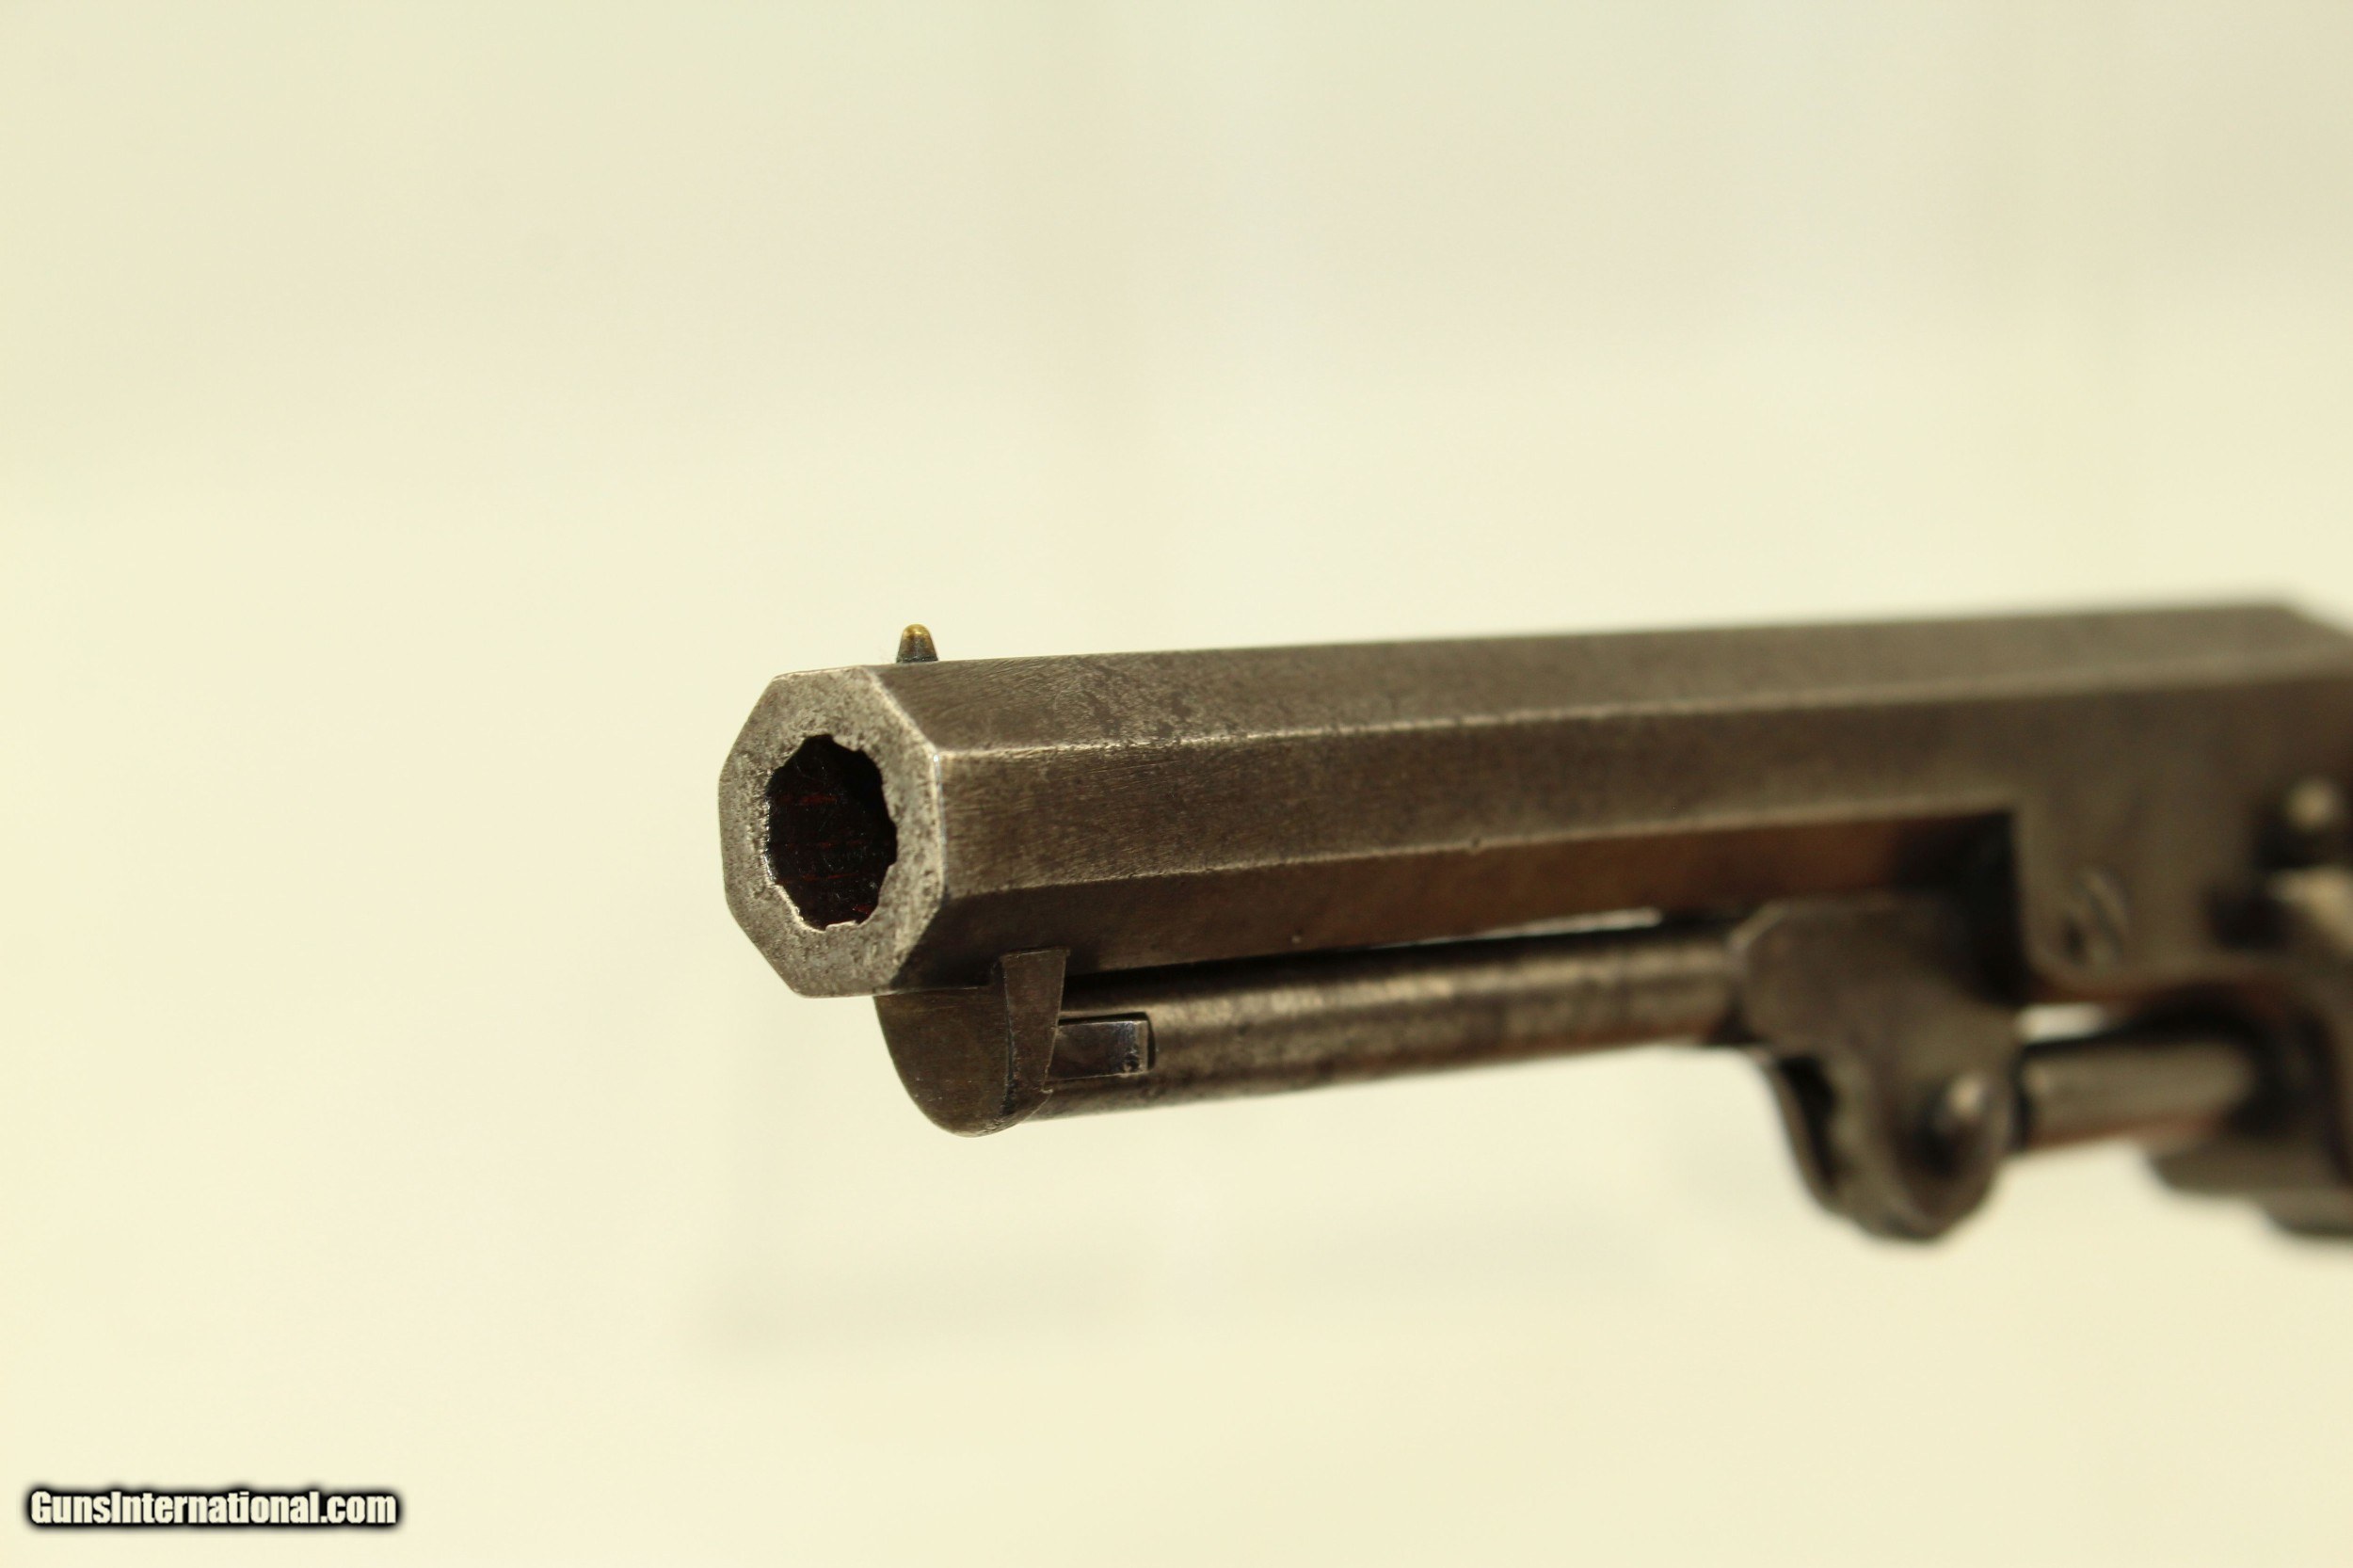 Period Writing Desk W Antique Colt 1849 Revolver 1853 Made